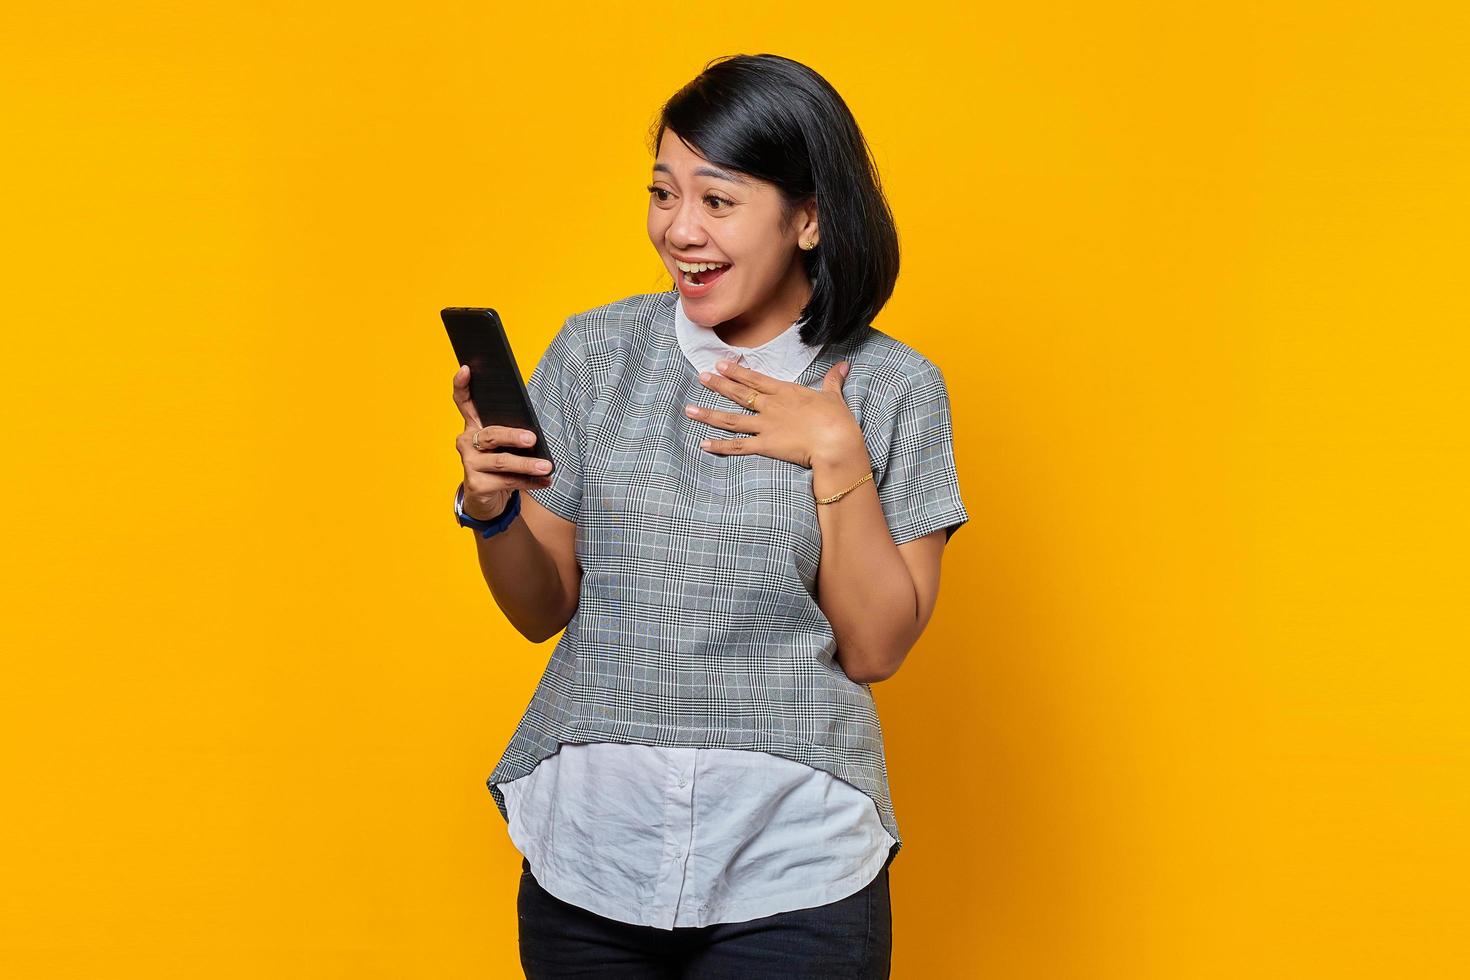 jovem asiática surpresa segurando um telefone celular com a boca aberta em fundo amarelo foto